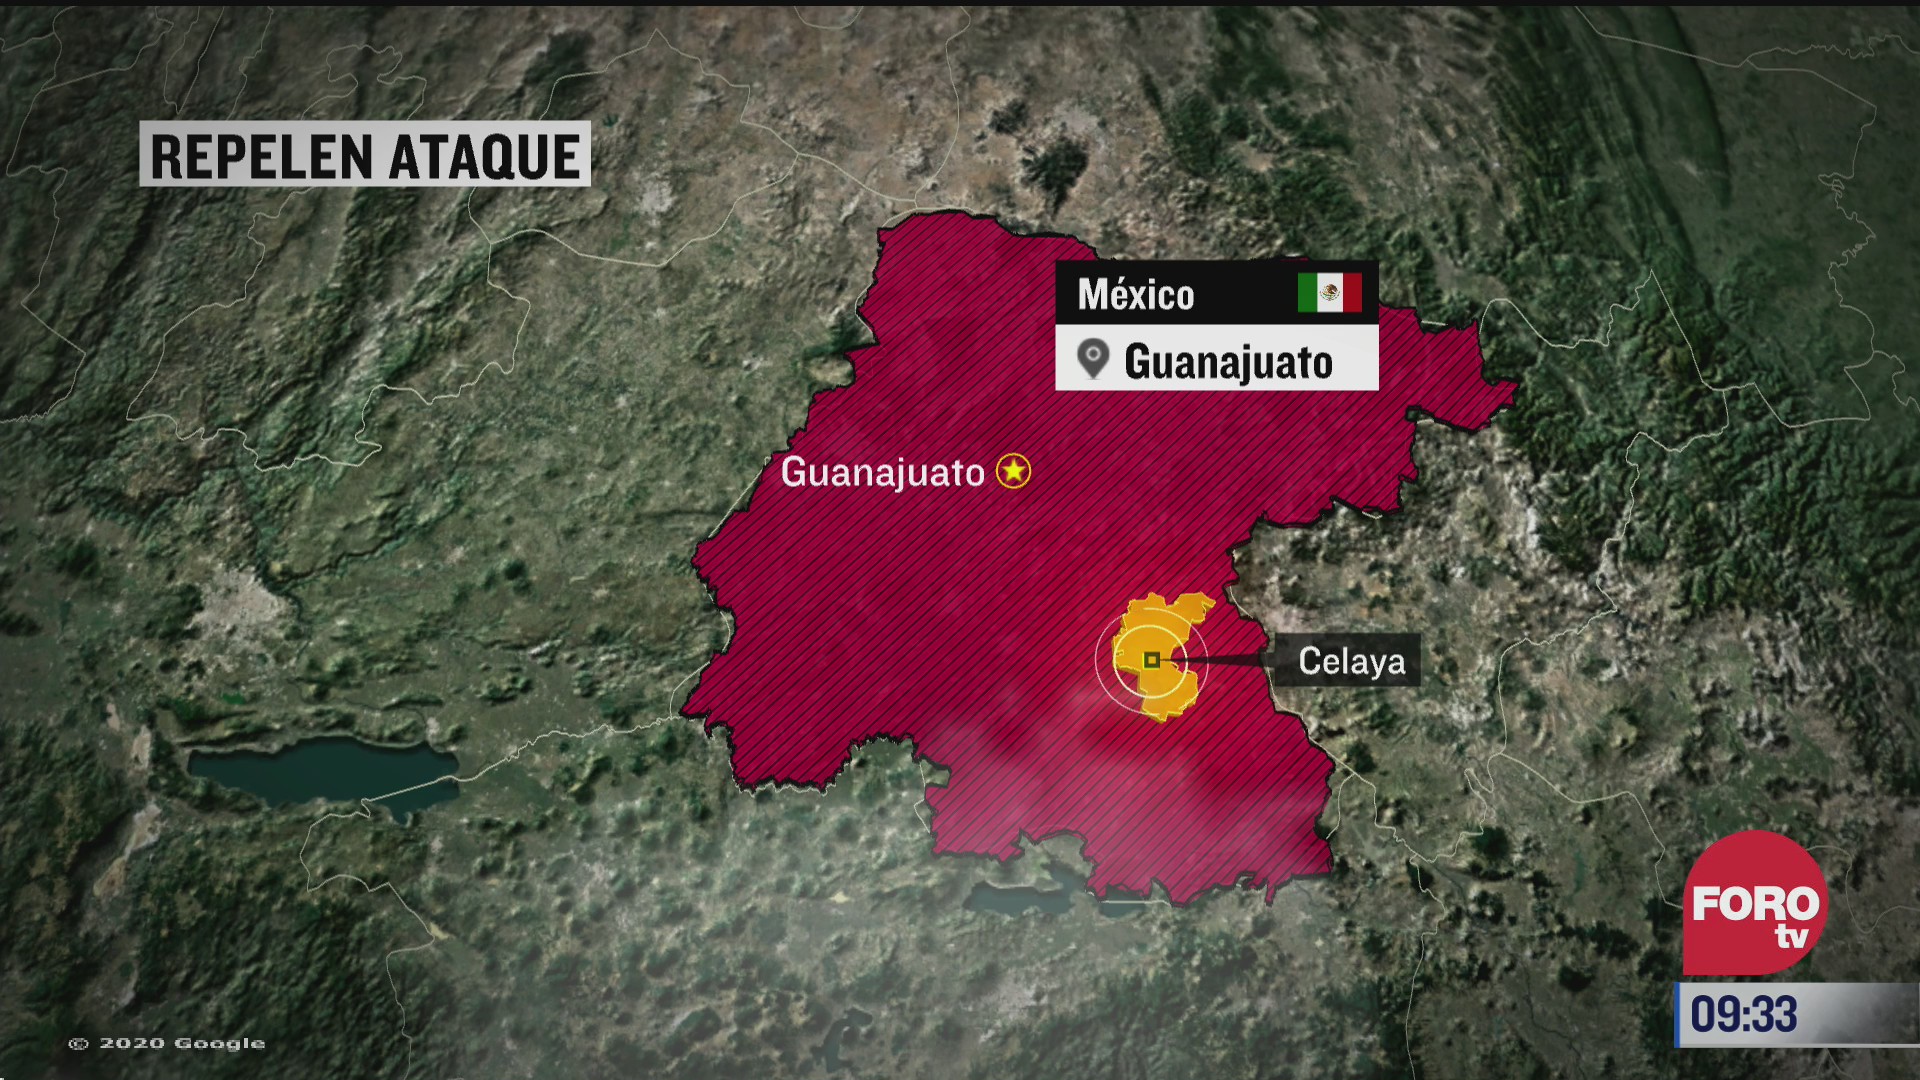 fuerzas de seguridad repelen agresion en guanajuato